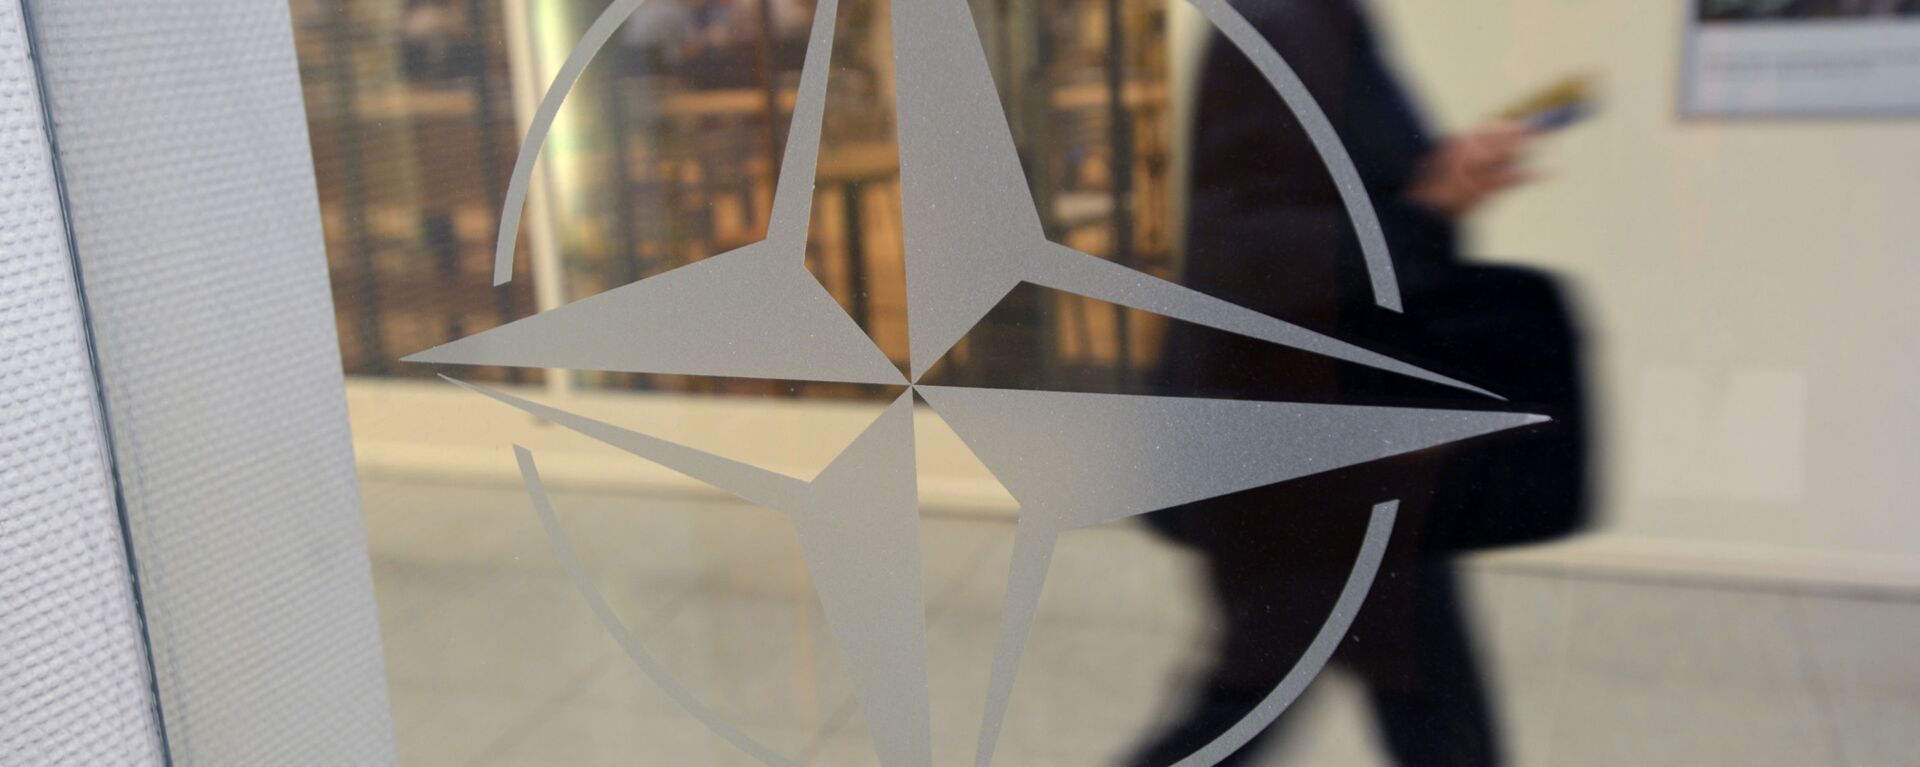 Biểu tượng của tổ chức tại Trụ sở NATO ở Brussels, Bỉ - Sputnik Việt Nam, 1920, 14.08.2022